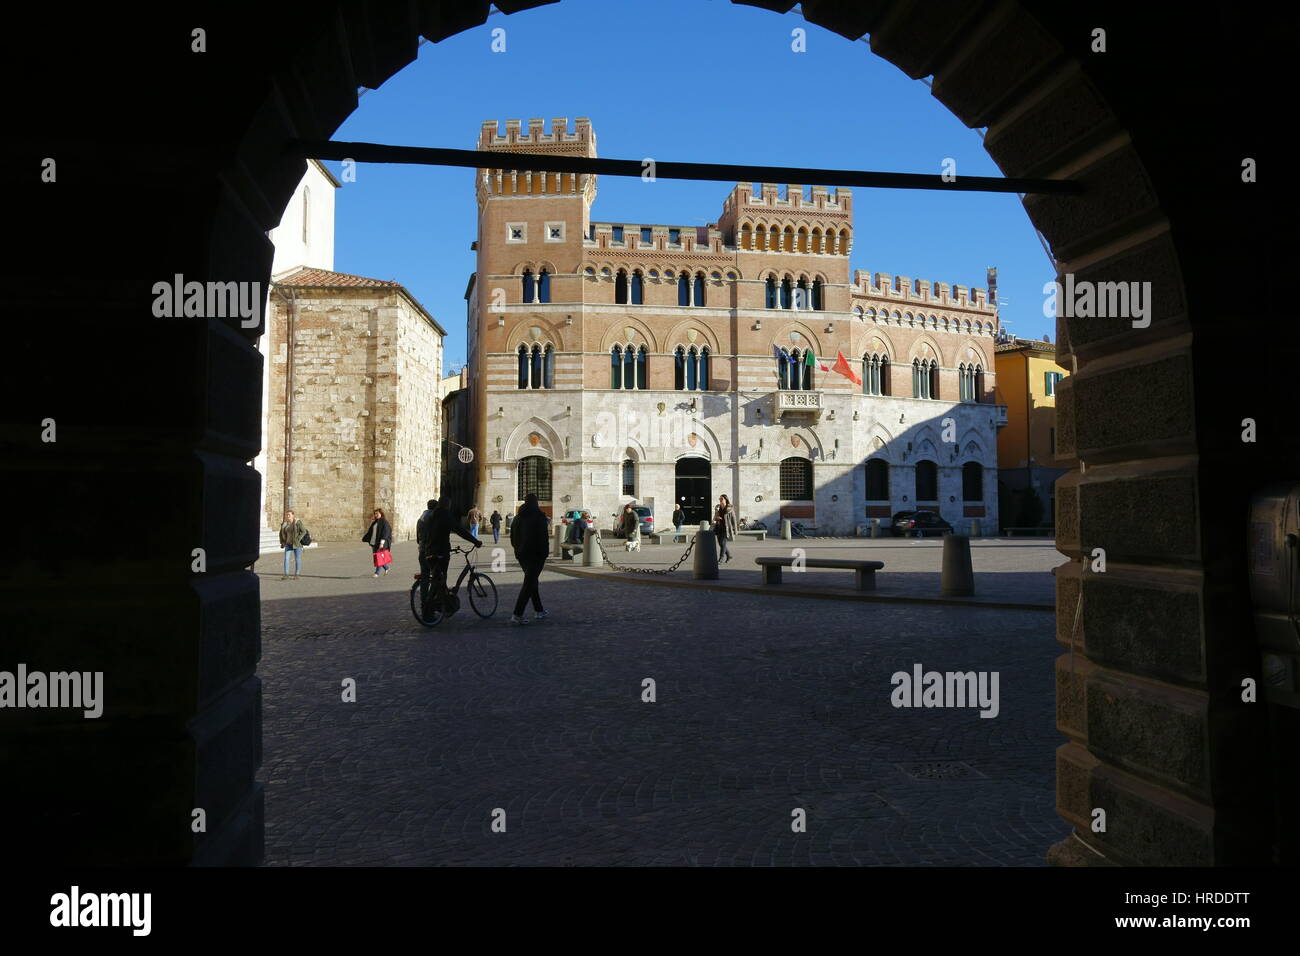 Grosseto Palazzo Aldobrandeschi Fassade Blick durch einen Bogen vor einem strahlend blauen Himmel - Piazza Dante Alighieri, Grosseto, Toskana, Italien, Europa Stockfoto